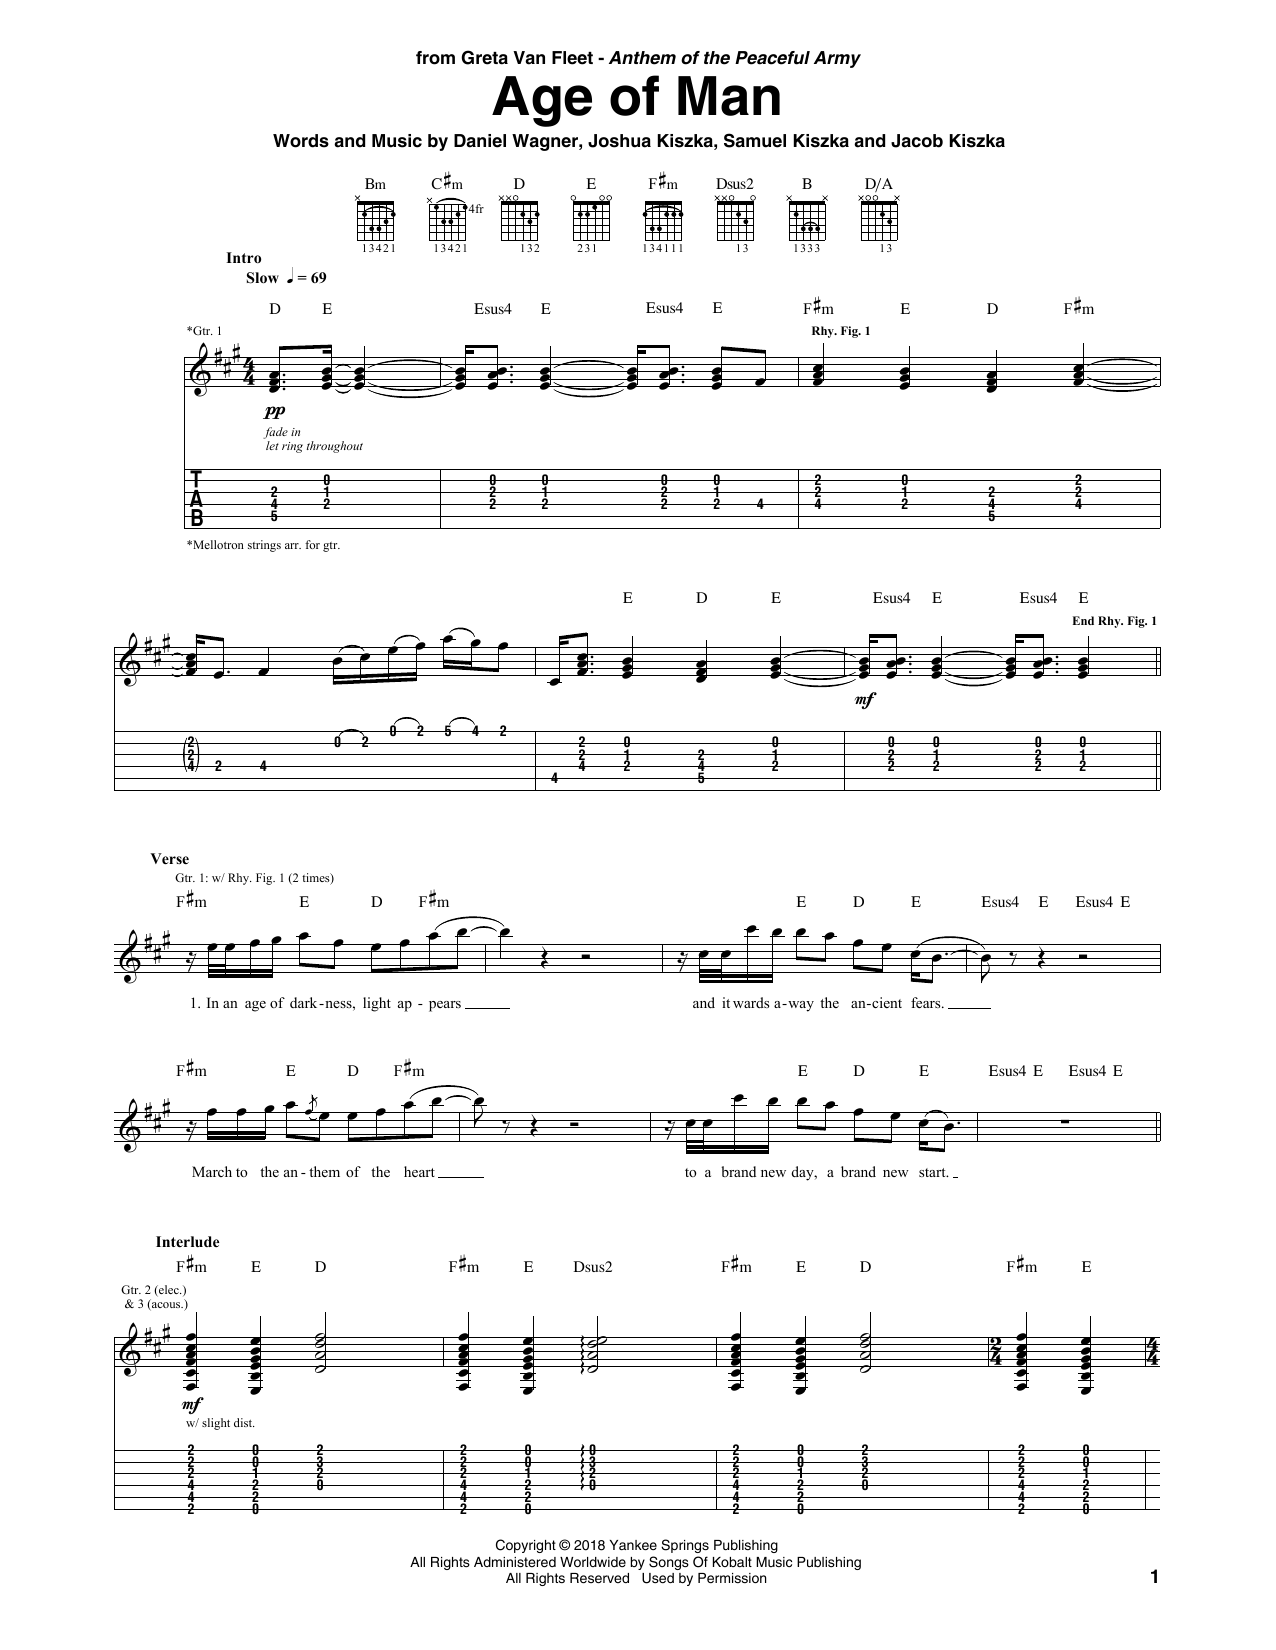 Greta Van Fleet Age Of Man Sheet Music Notes & Chords for Guitar Tab - Download or Print PDF